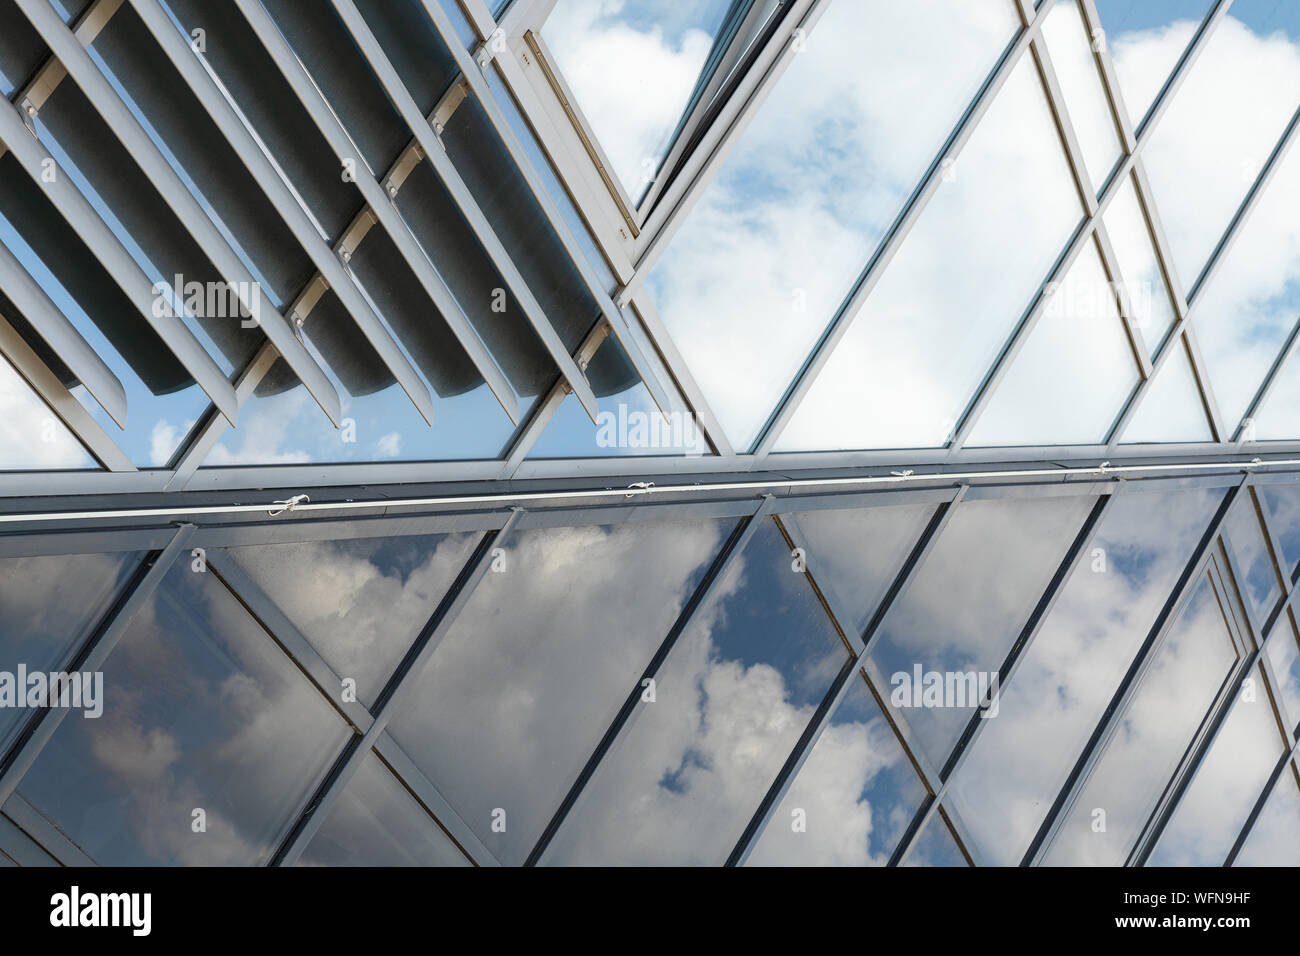 Glänzend Glaswand mit verdunkeln Glas und durchsichtiges Glas gemeinsam mit  Sky Reflexion, Mirrorlike Stockfotografie - Alamy